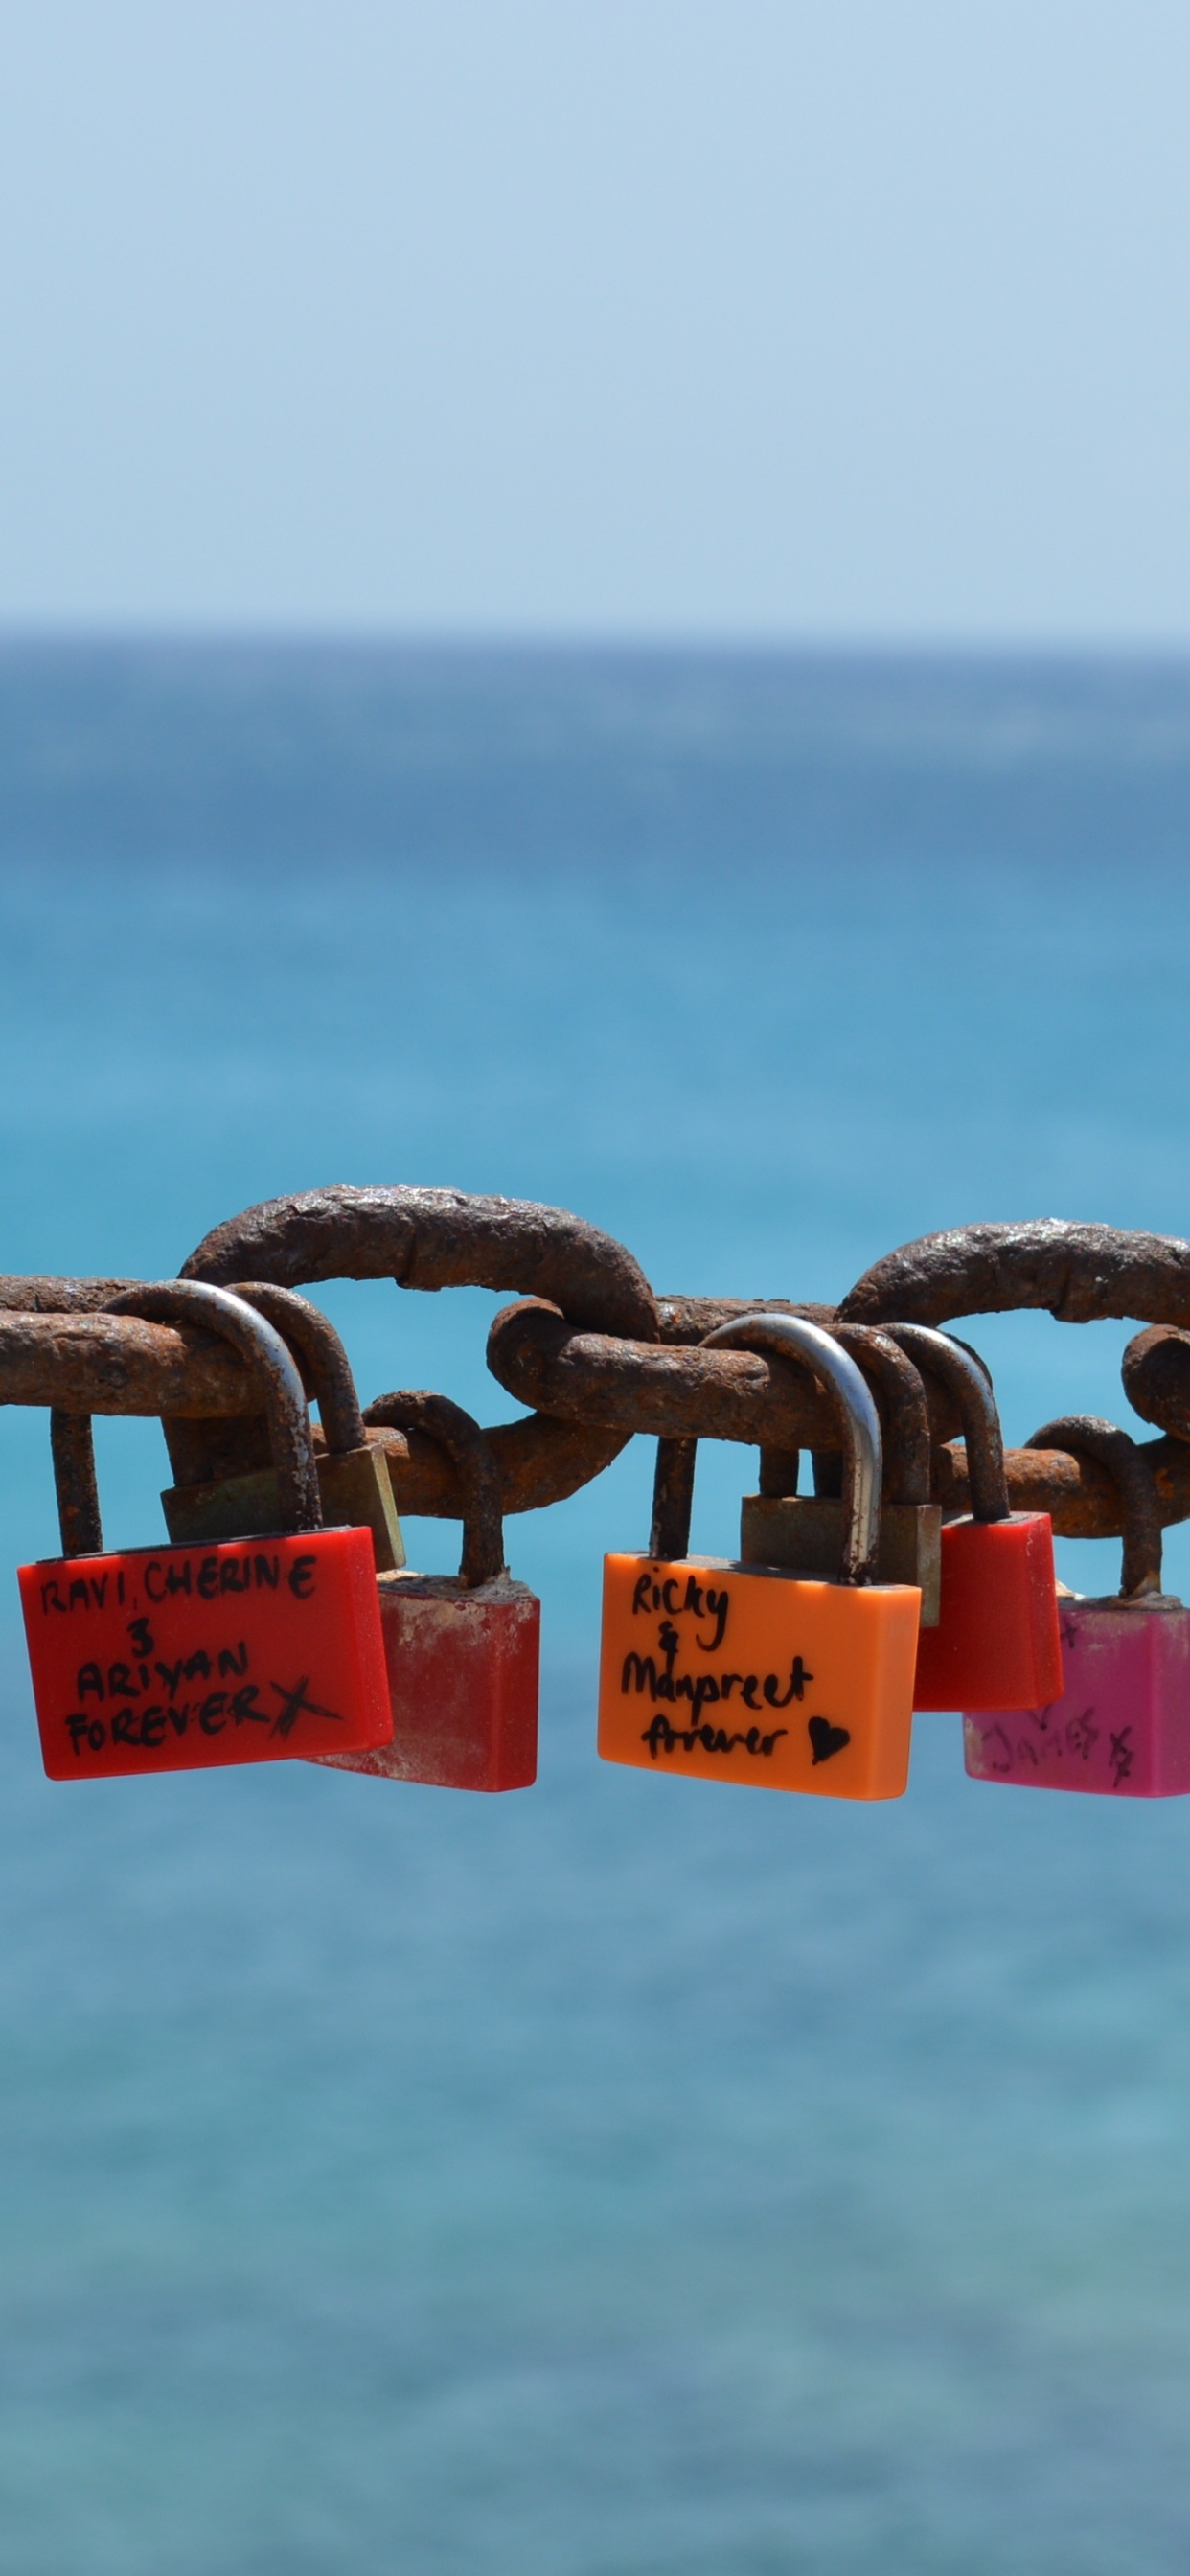 挂锁, 锁定, 锁和钥匙, 大海, 海洋 壁纸 1242x2688 允许